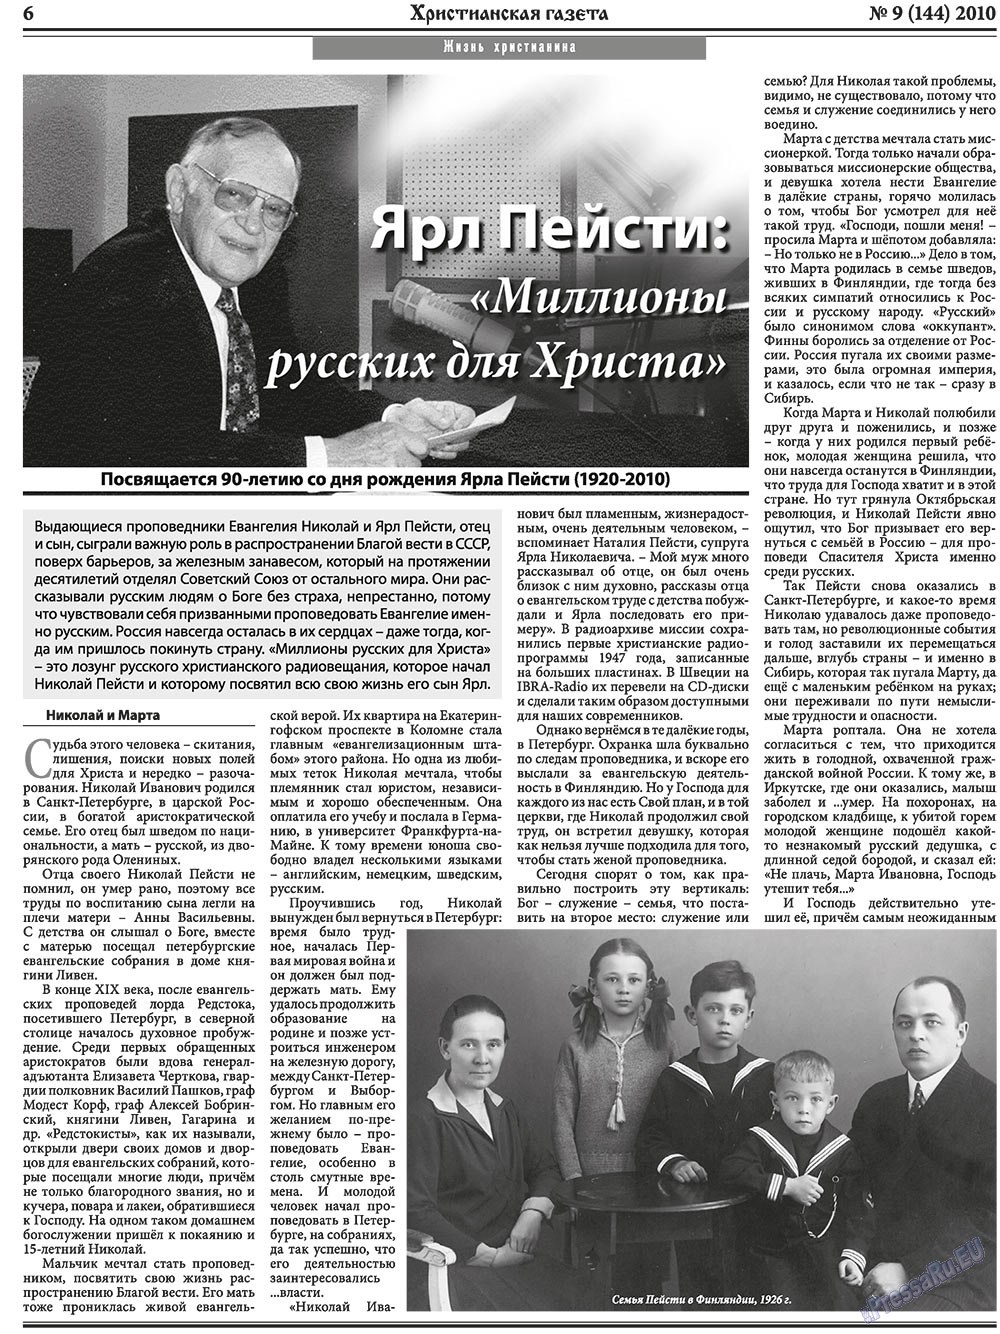 Христианская газета, газета. 2010 №9 стр.6